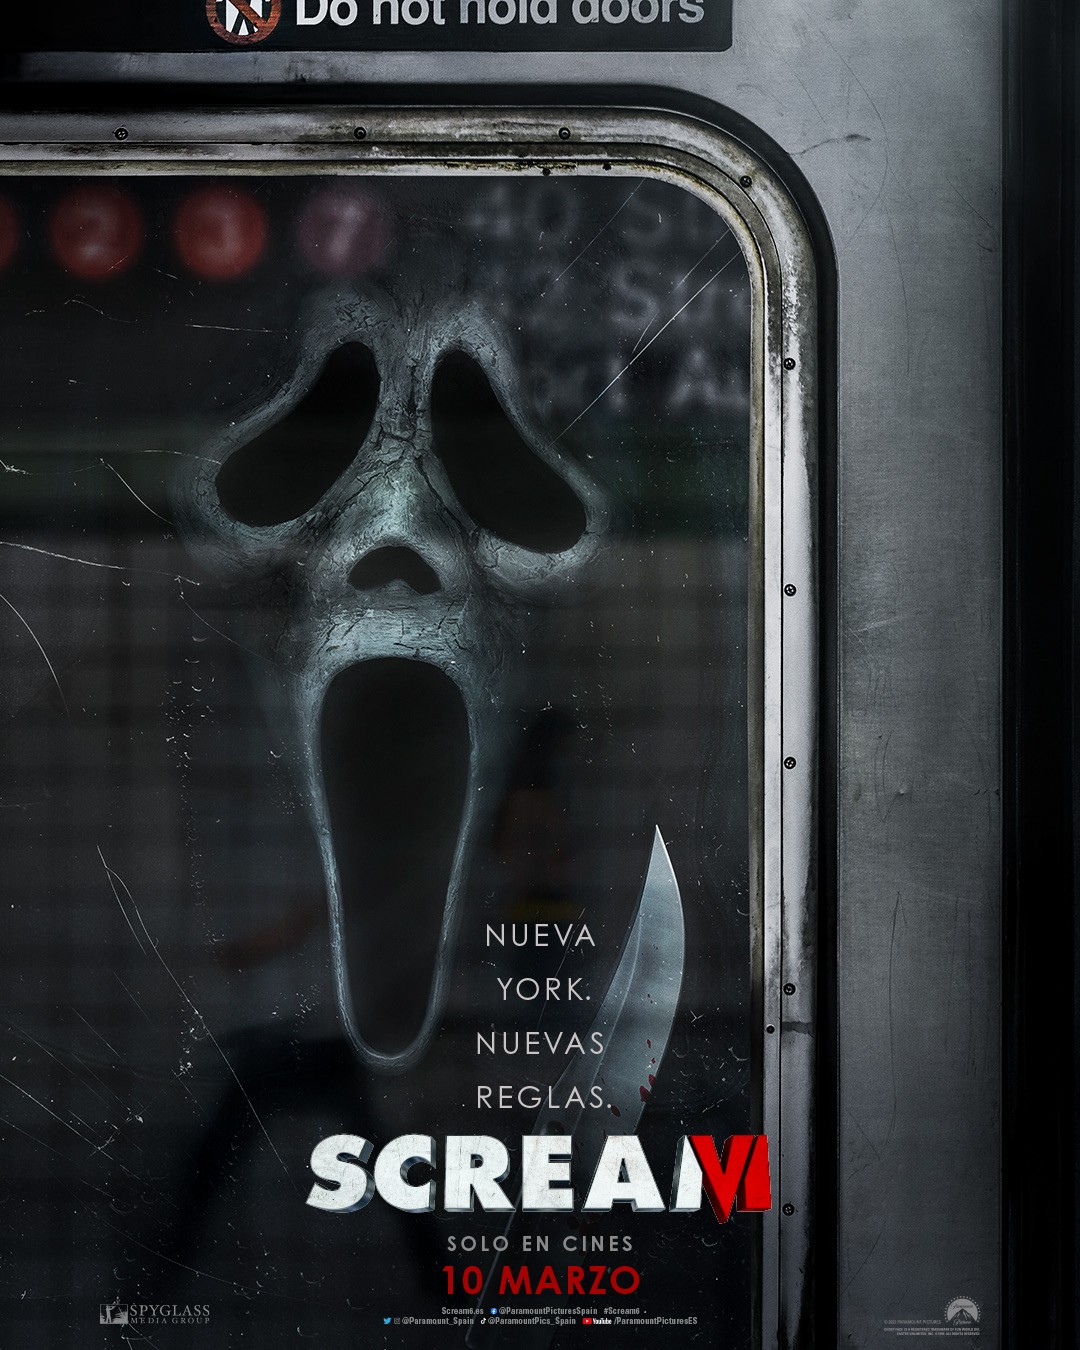 Scream 6 Tráiler y póster oficial 10 marzo en cines